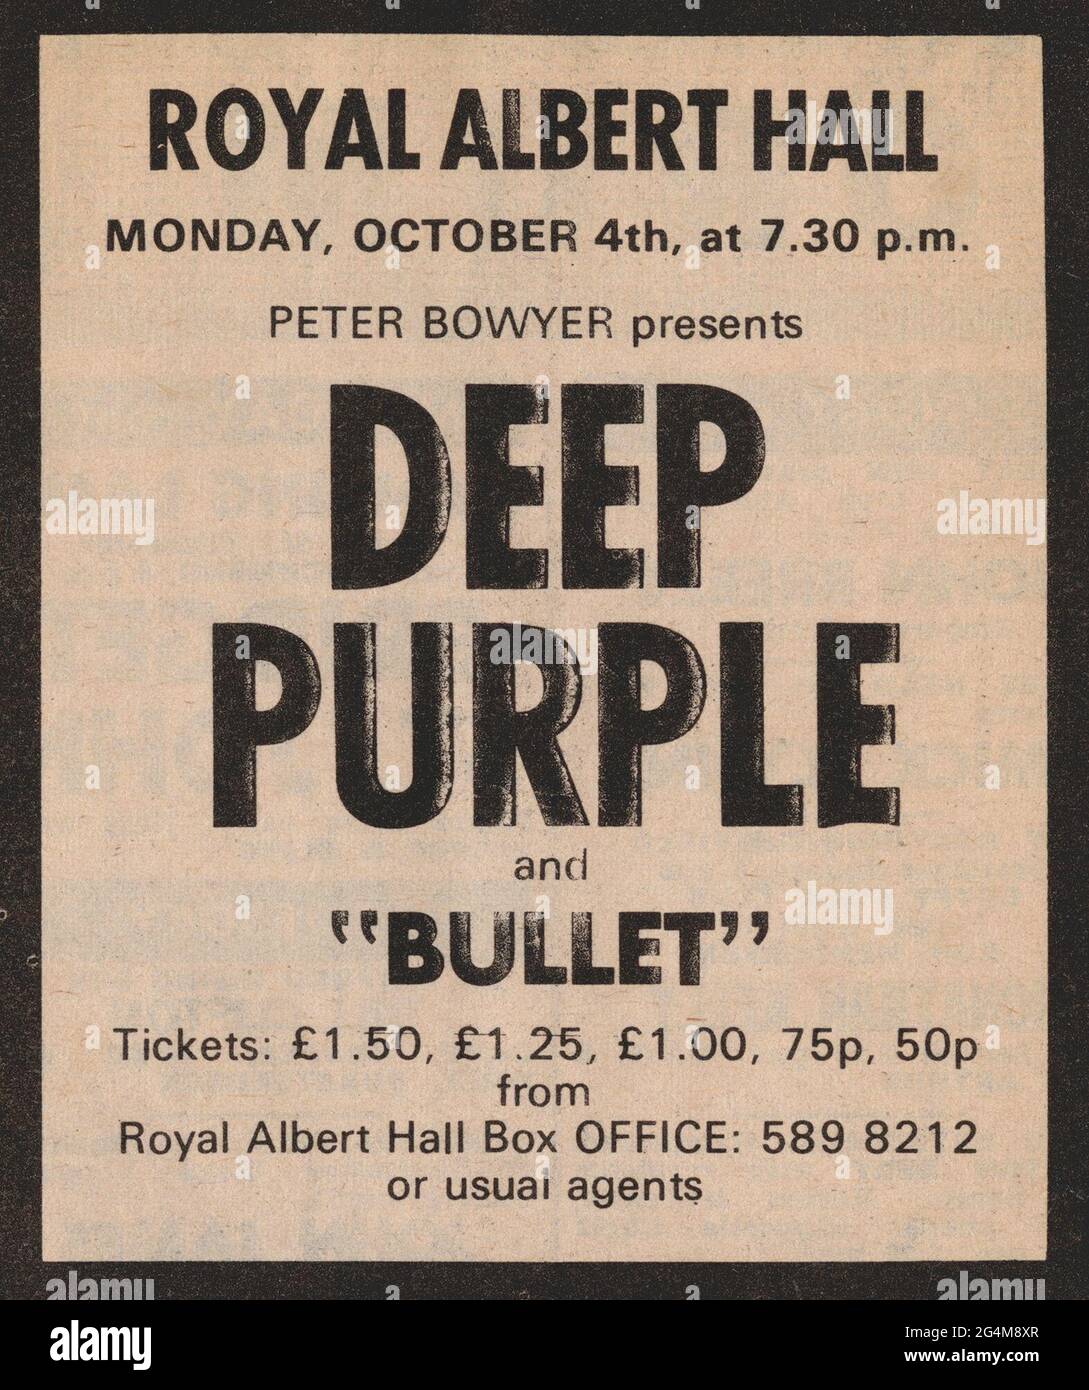 Deep Purple, britische Hardrock-Band, 70er Jahre. Vintage-Presseanzeigen für Live-Konzerte in der Royal Albert Hall 1971 und 1973 UK-Tournee. Ritchie Blackmore, Jon Lord, Ian Gillan, Ian Paice, Roger Glover. Dies ist die berühmte Besetzung, die das Machine Head Album und Smoke auf der Water Hit Single aufgenommen hat. Weitere Erinnerungsstücke verfügbar. Stockfoto